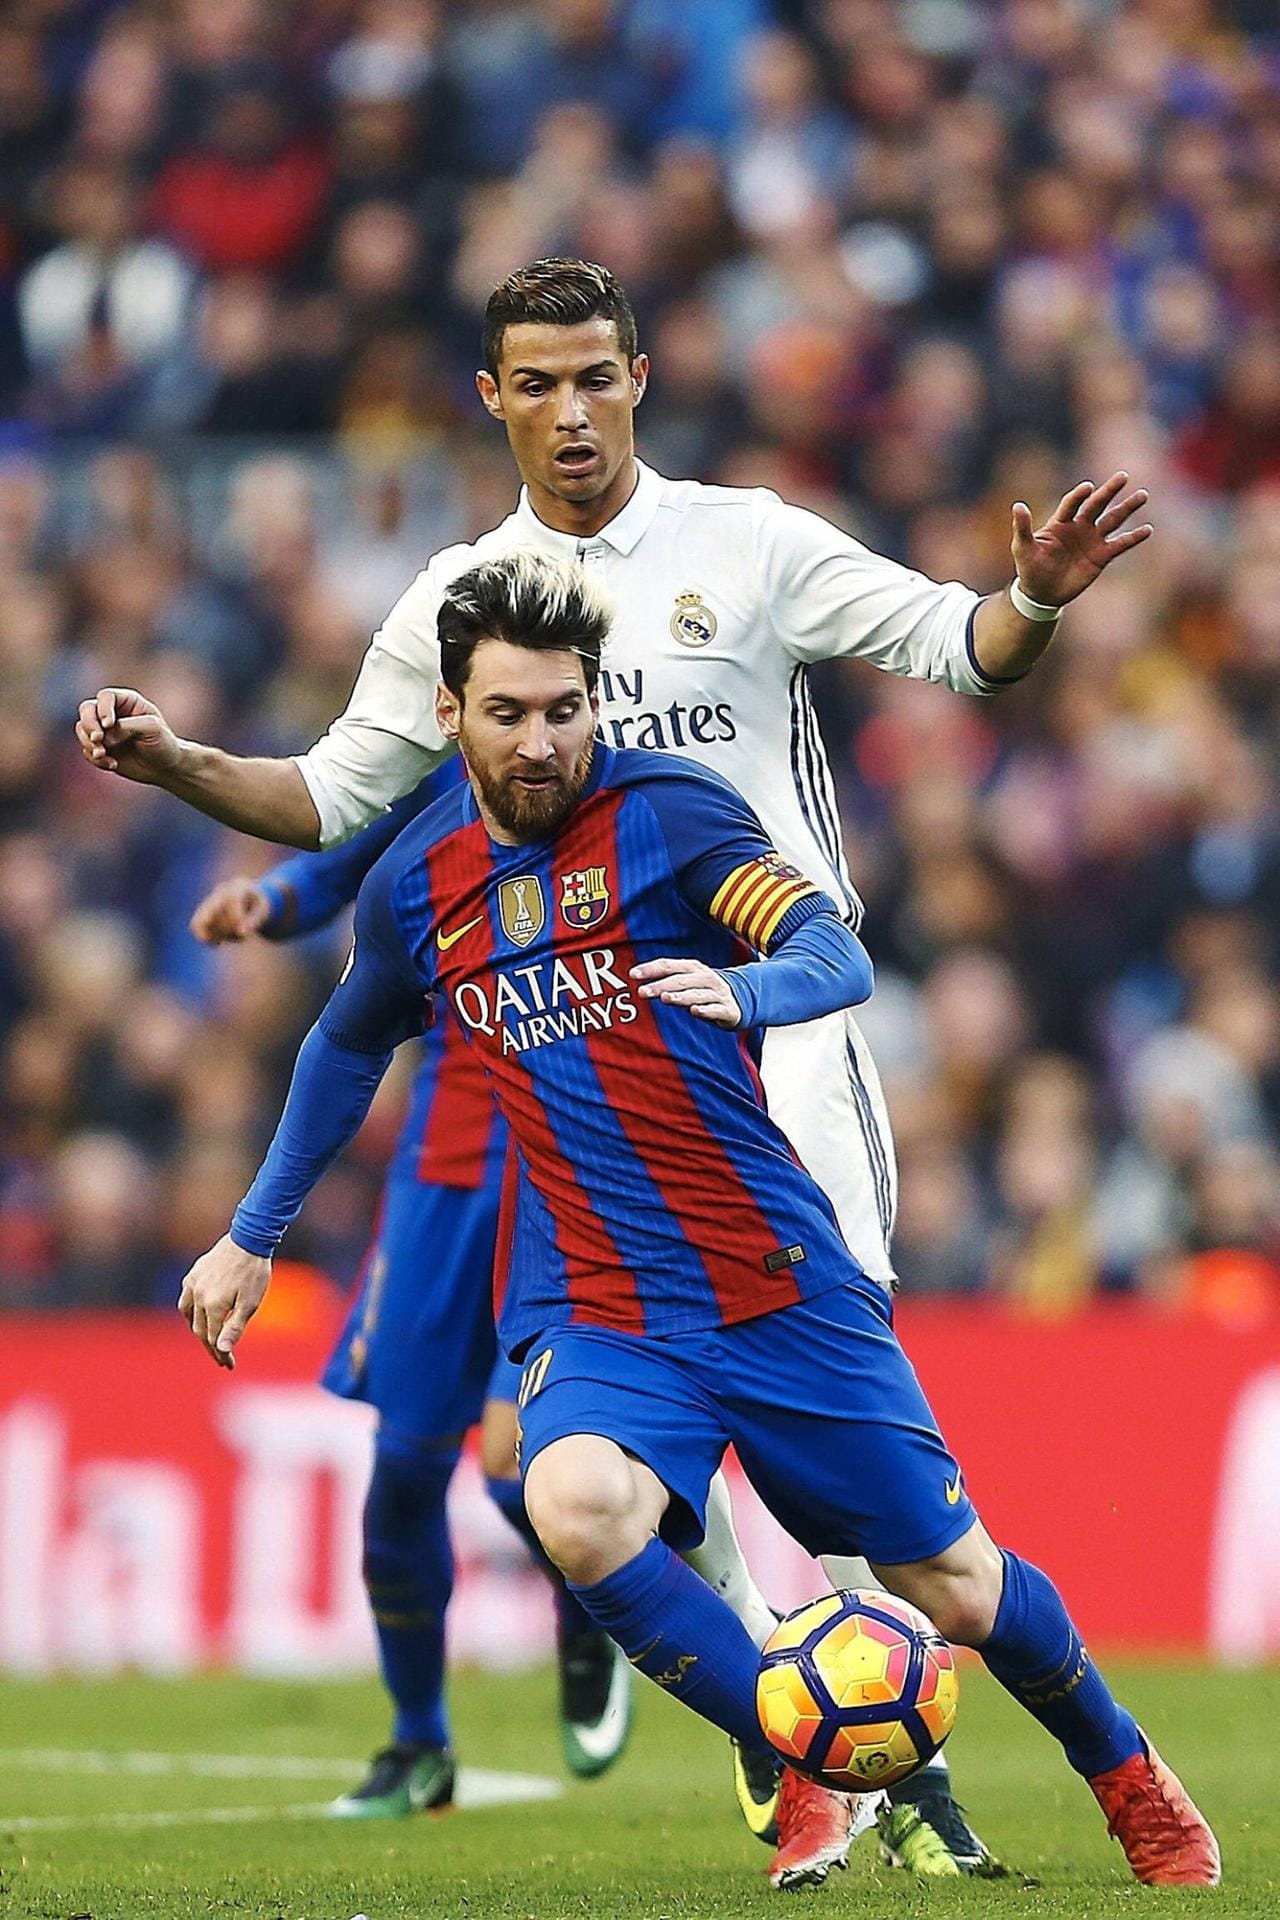 Dauerrivalen: Lionel Messi und Cristiano Ronaldo gelten als ewige Konkurrenten auf dem Spielfeld. Messi will das nicht ganz so stehen lassen: "Ich habe es immer betont – und er auch: Diese Rivalität wird mehr von der Presse angeheizt als von uns", sagte der Argentinier dem Sender "ESPN".